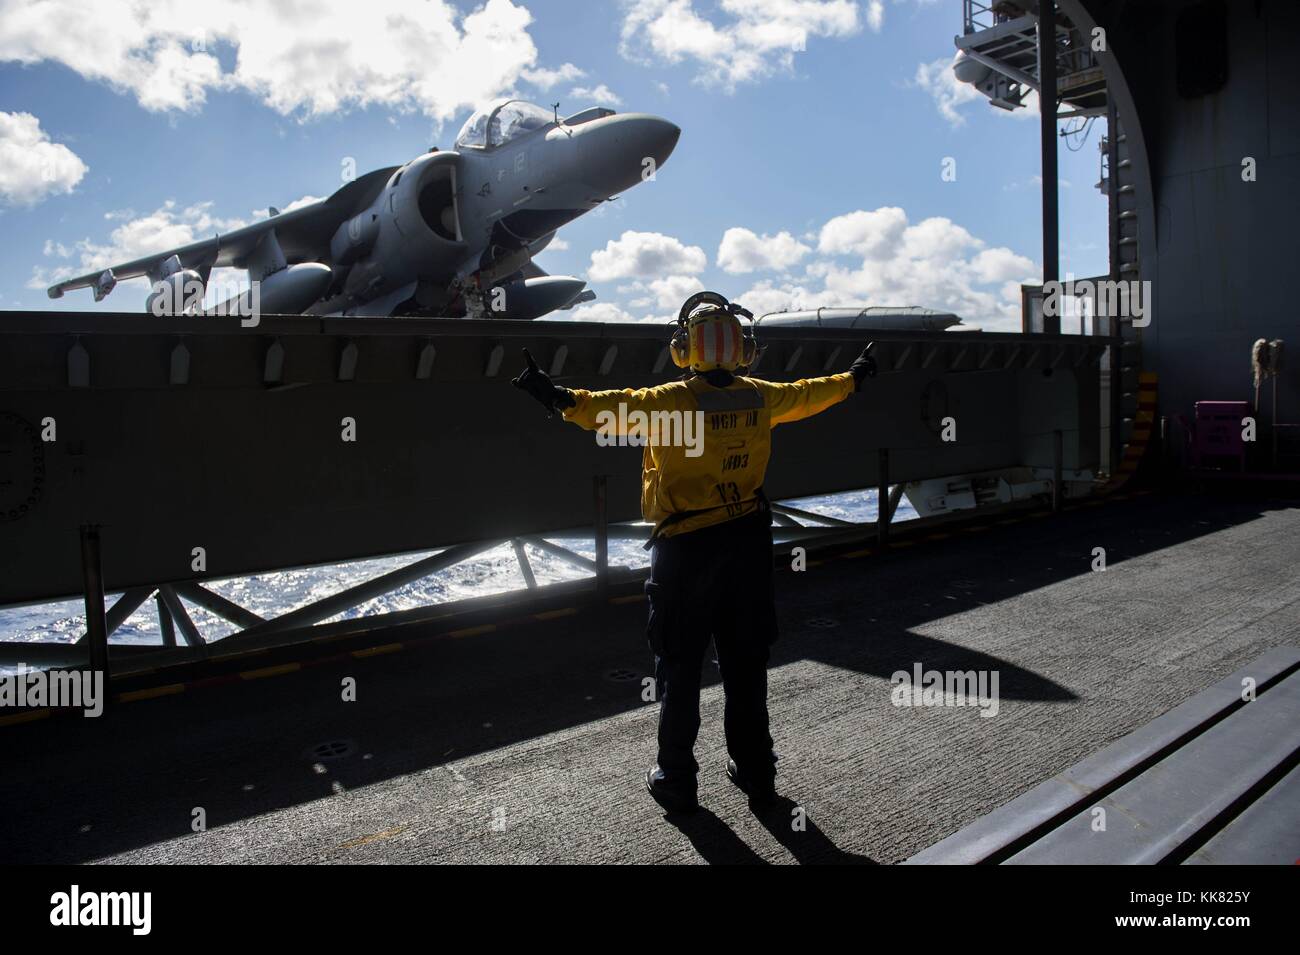 Der Luftfahrt Bootsmann Mate Handhabung 2. Klasse Araminta Mack leitet einen Fahrstuhl Betreiber im Hangar Bucht des Amphibious Assault ship USS Kearsarge LHD3, Atlantik. Bild mit freundlicher Genehmigung von Massenkommunikation Specialist 2. Klasse Shamira Purifoy/US Navy, 2015. Stockfoto